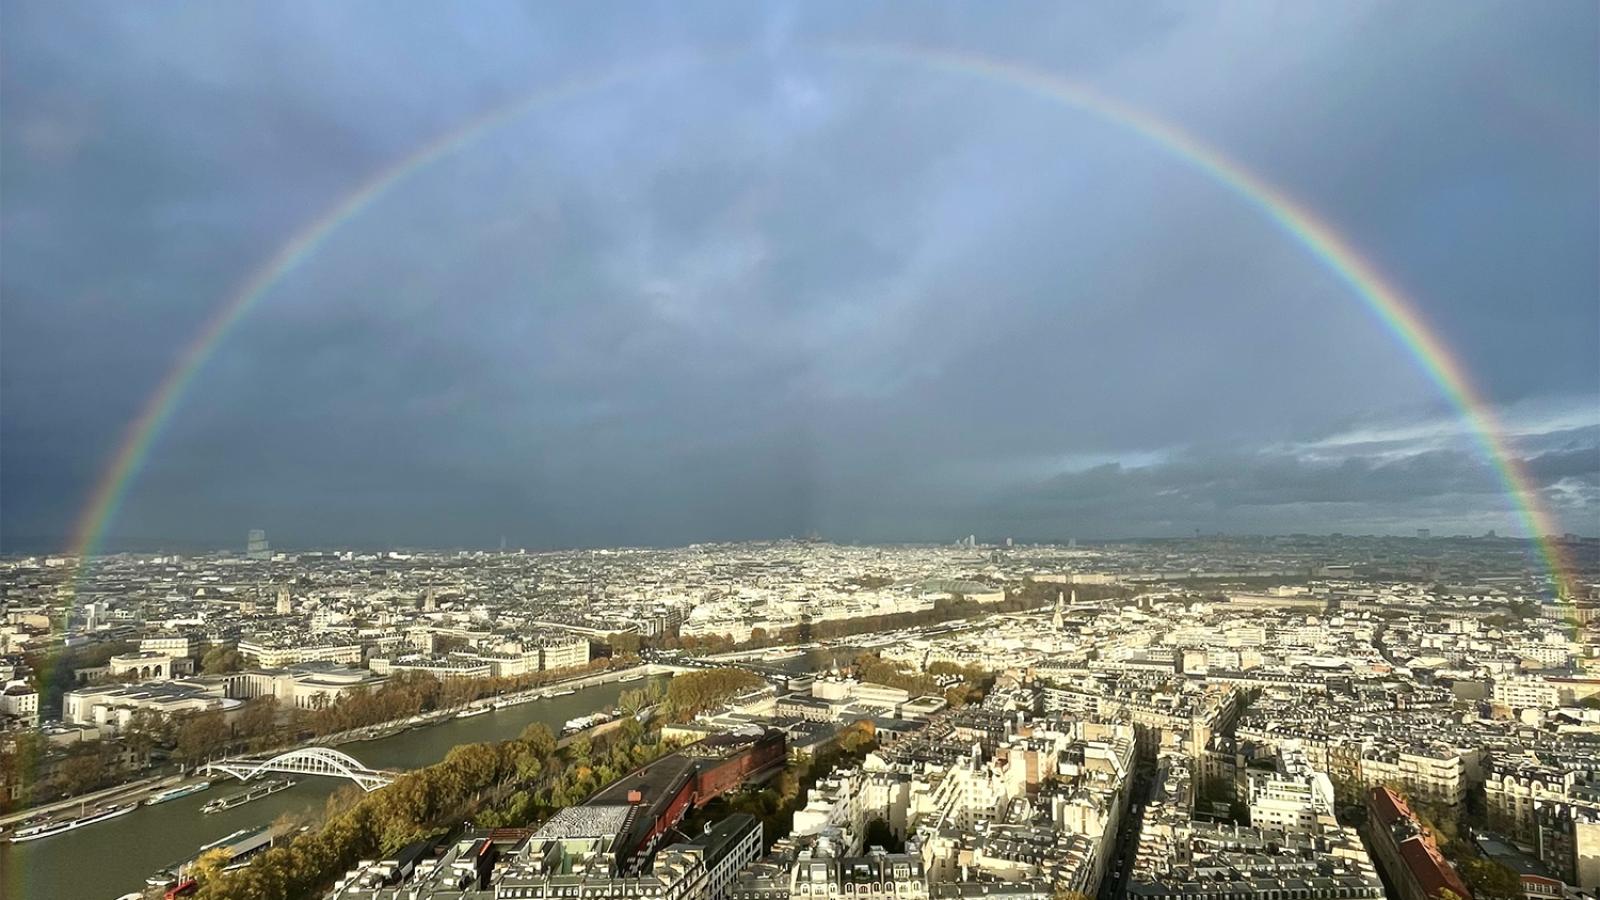 Full rainbow over city of Paris